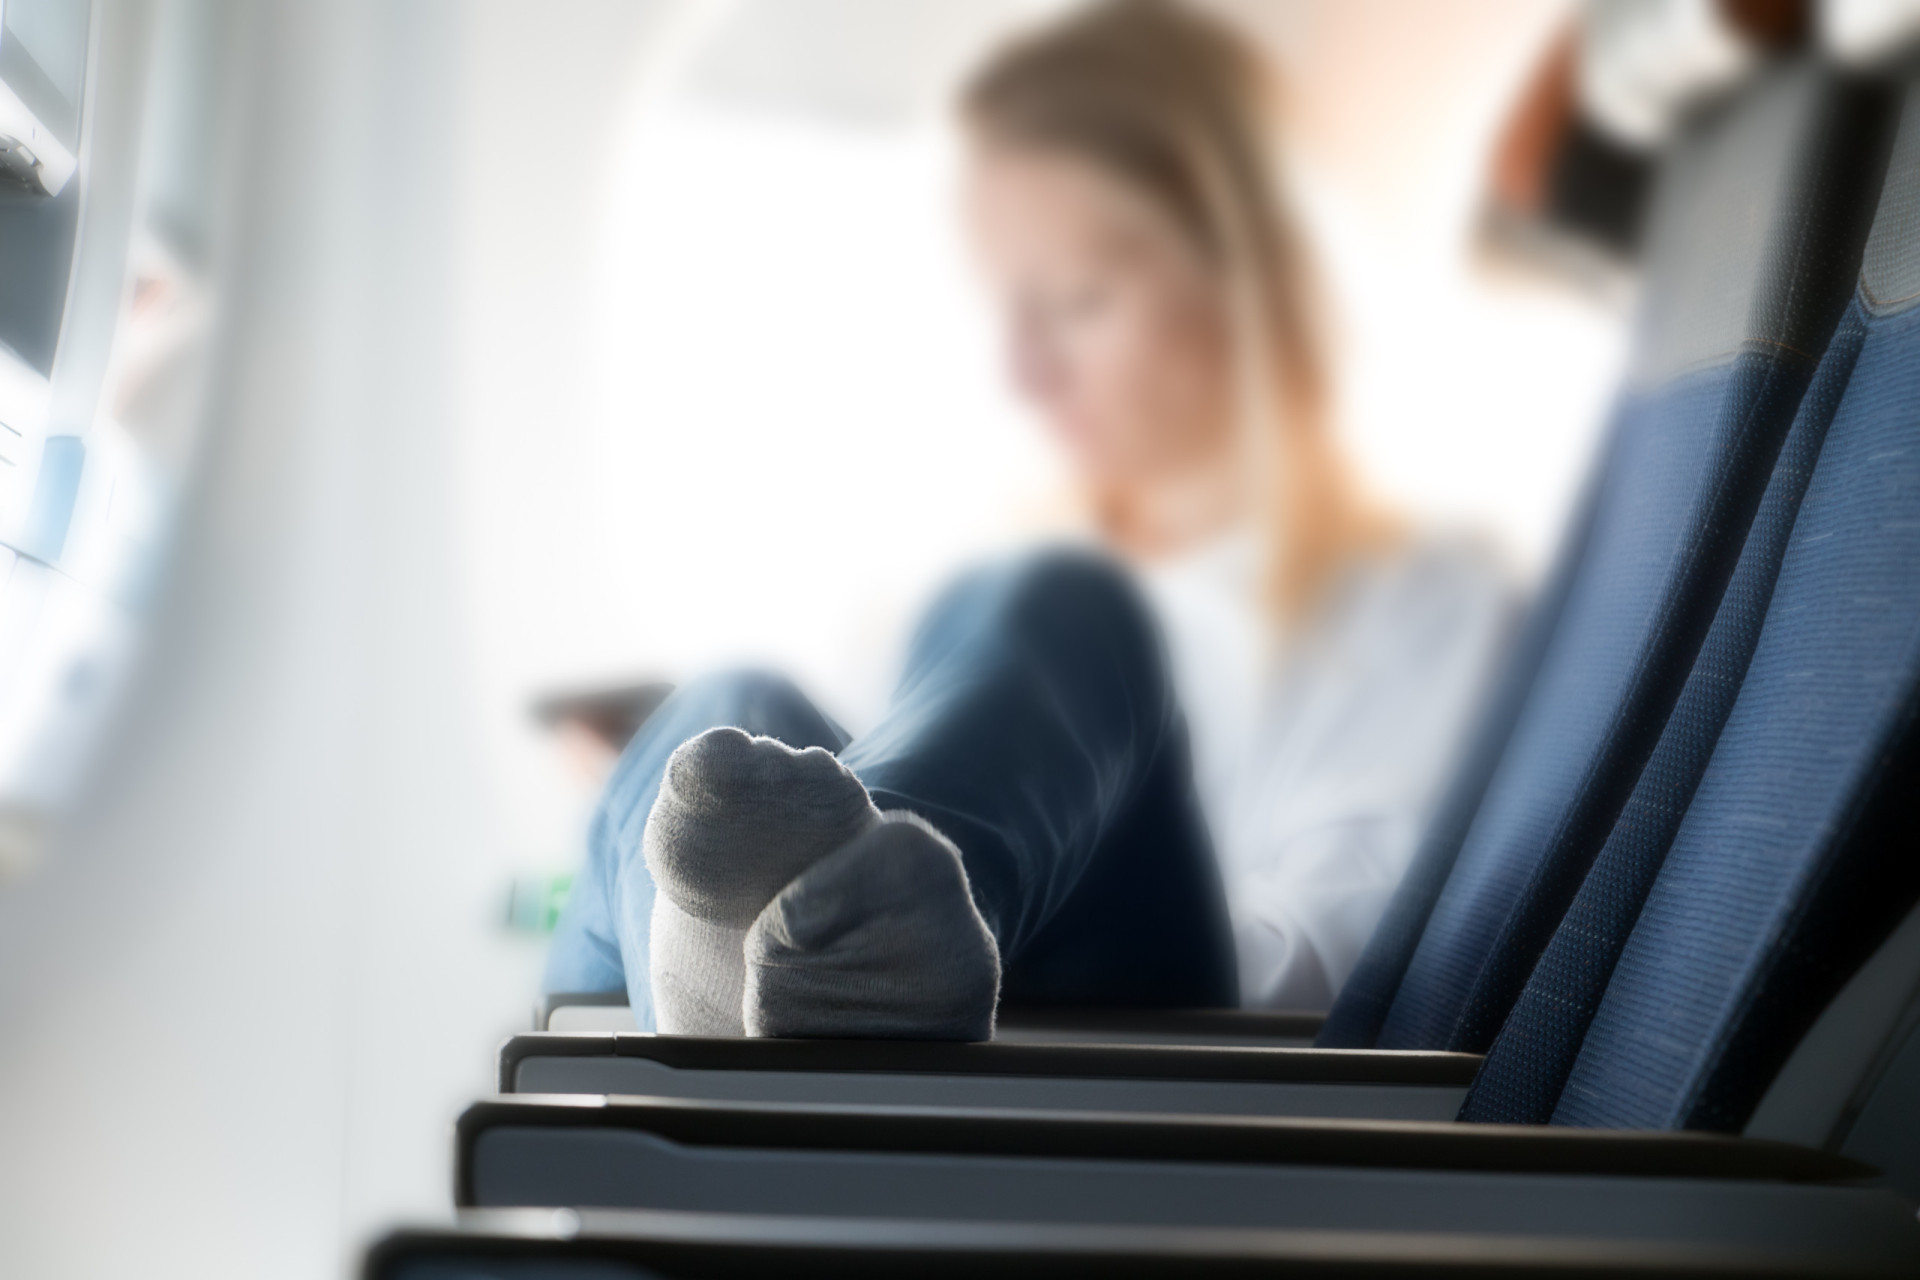 <p>Prendre l'avion peut faire gonfler les pieds, alors quel soulagement d'enlever ses chaussures pour les laisser "respirer"! Mais l'avion est un lieu public et vous ne serez pas apprécié si vous commencez à remplir la cabine d'odeurs de pieds moites. Et, s'il vous plaît, n'enlevez jamais vos chaussettes.</p>